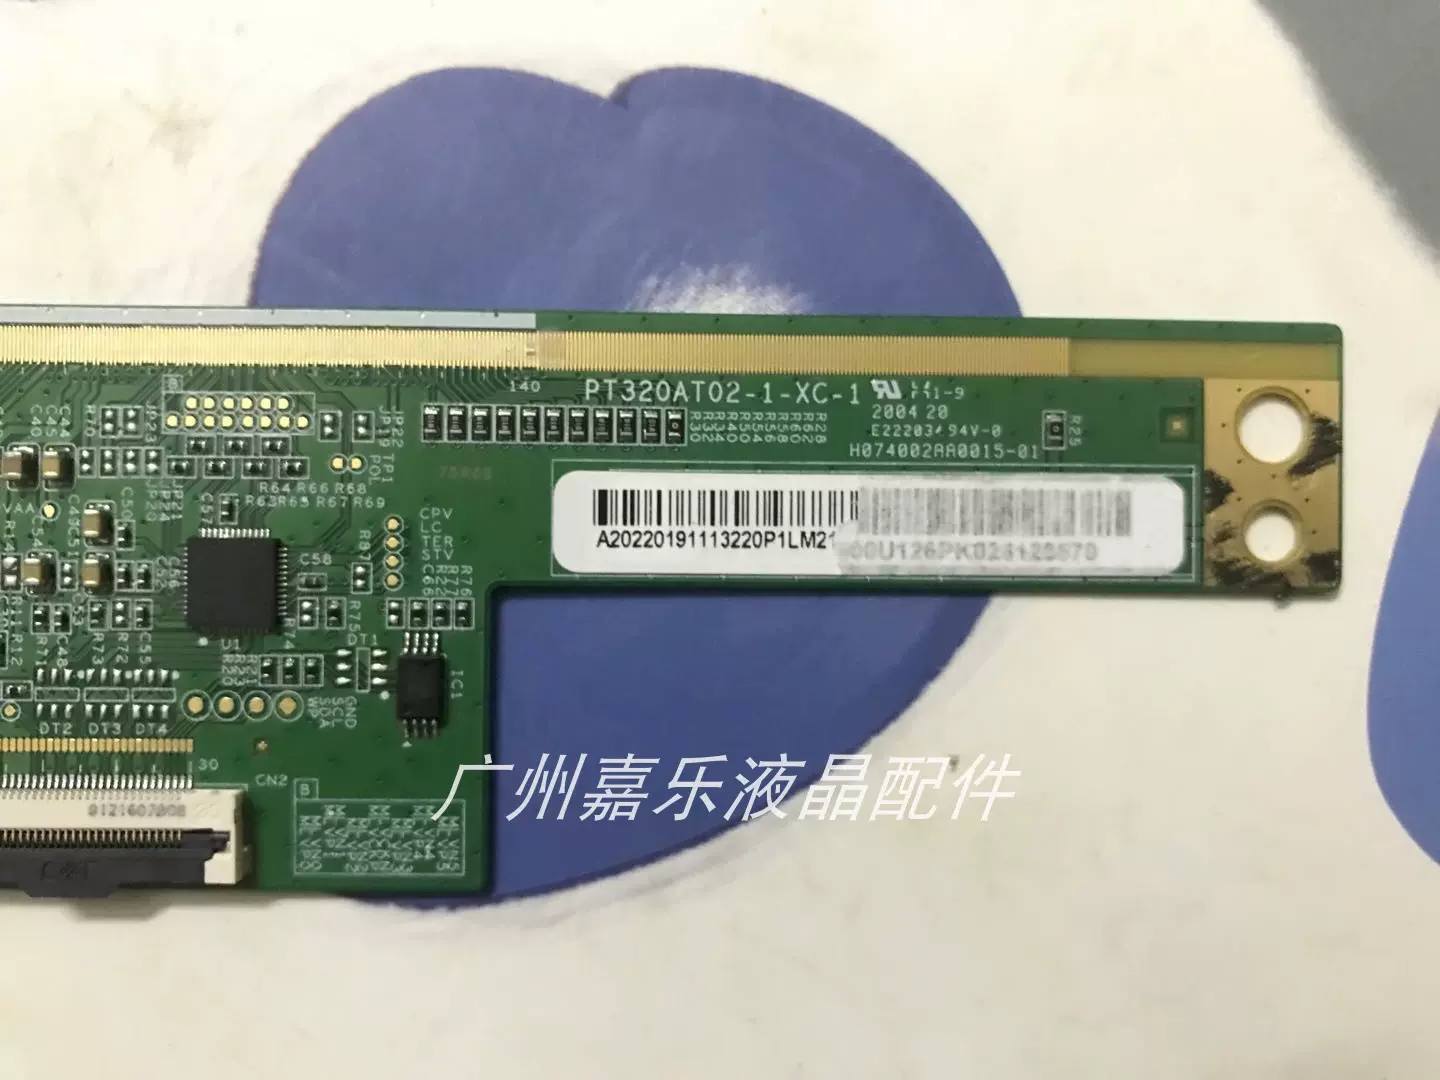 原装拆机边板ST3151A07-5-XC-1 一条价成色新- Taobao